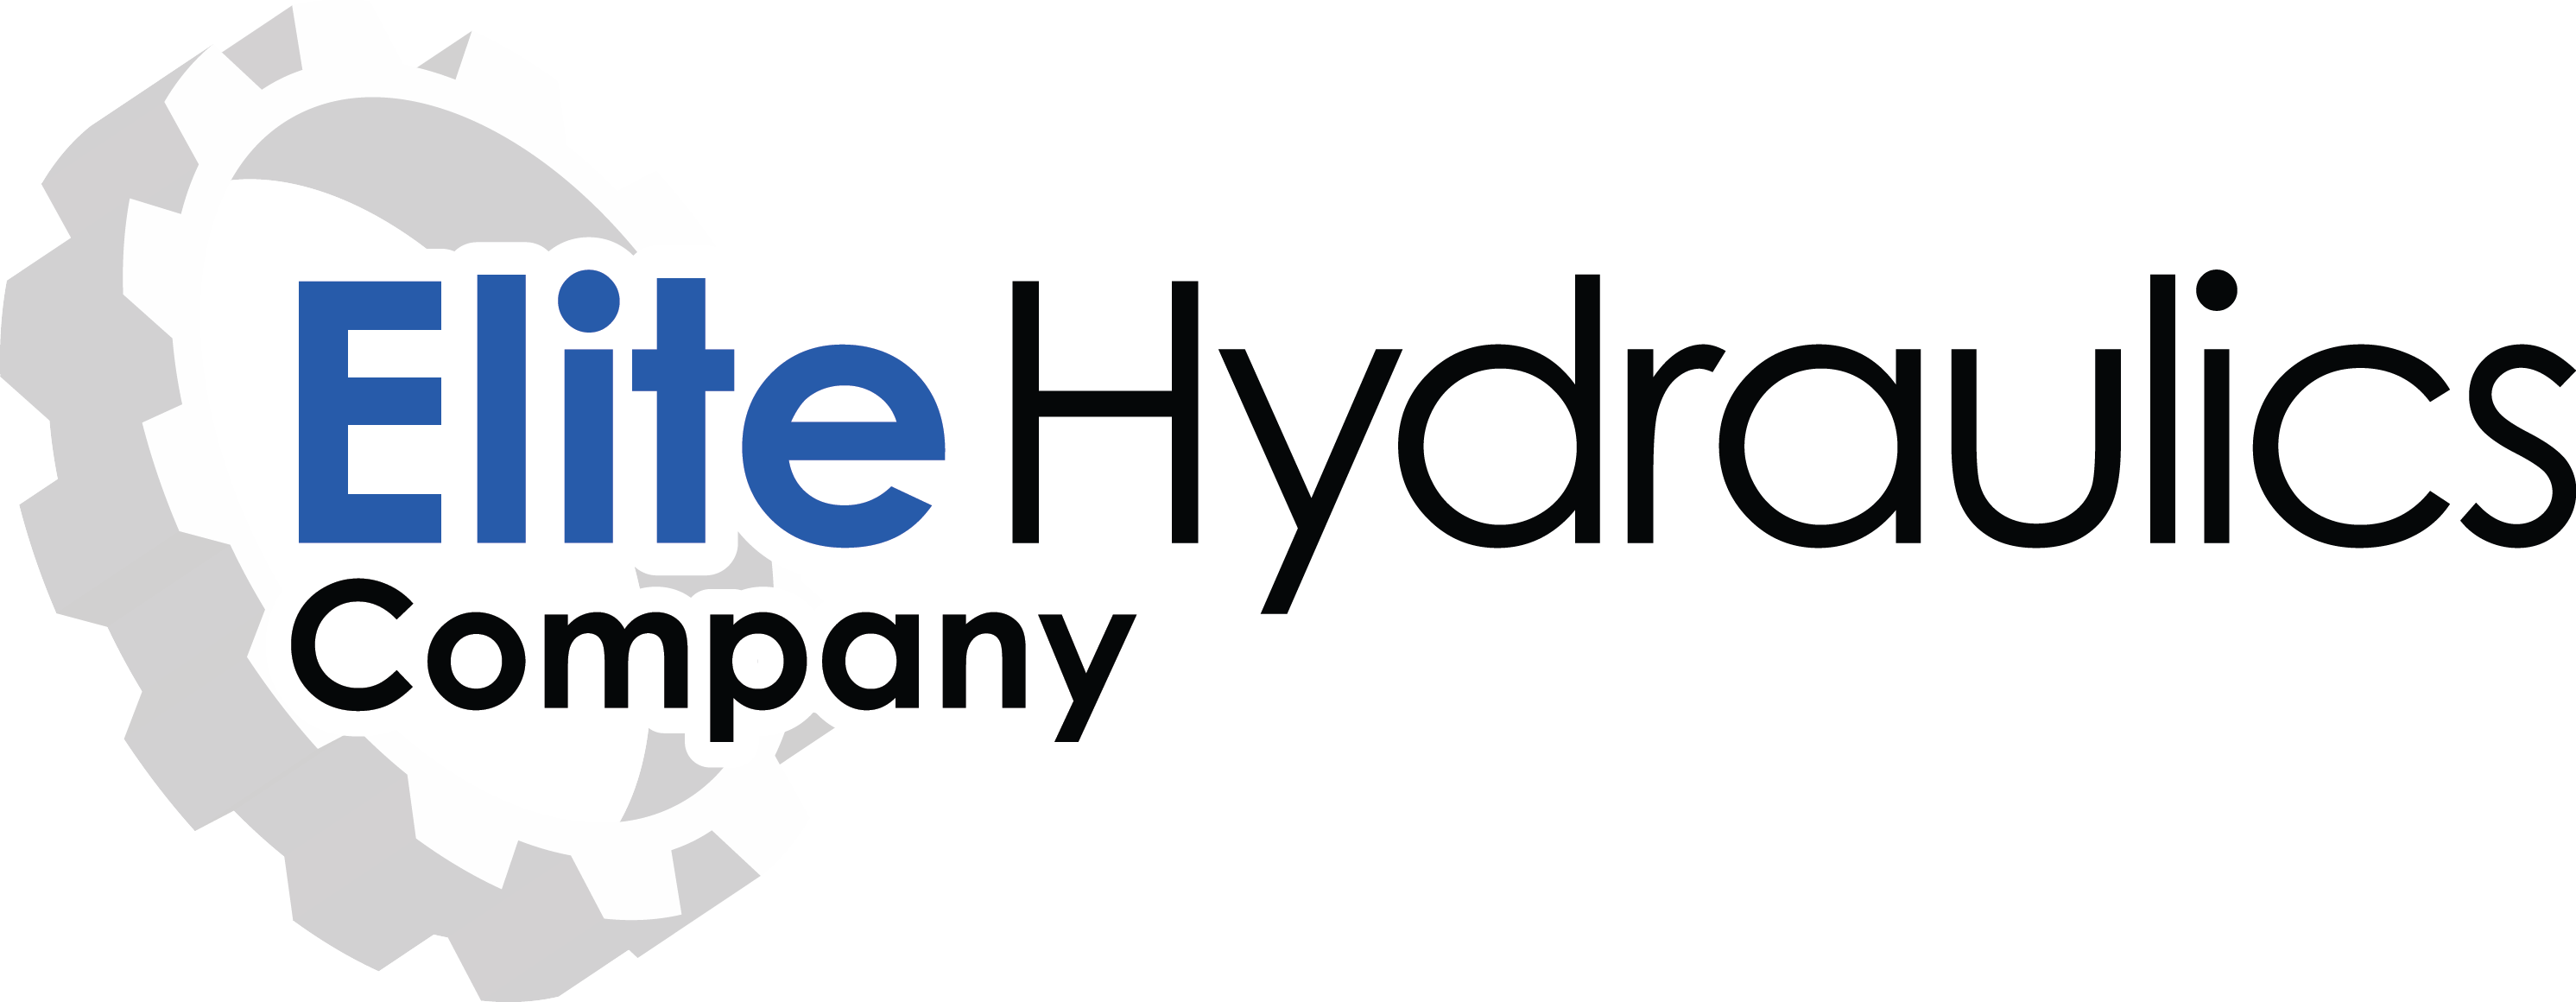 Hydraulics Logo - Elite Hydraulics